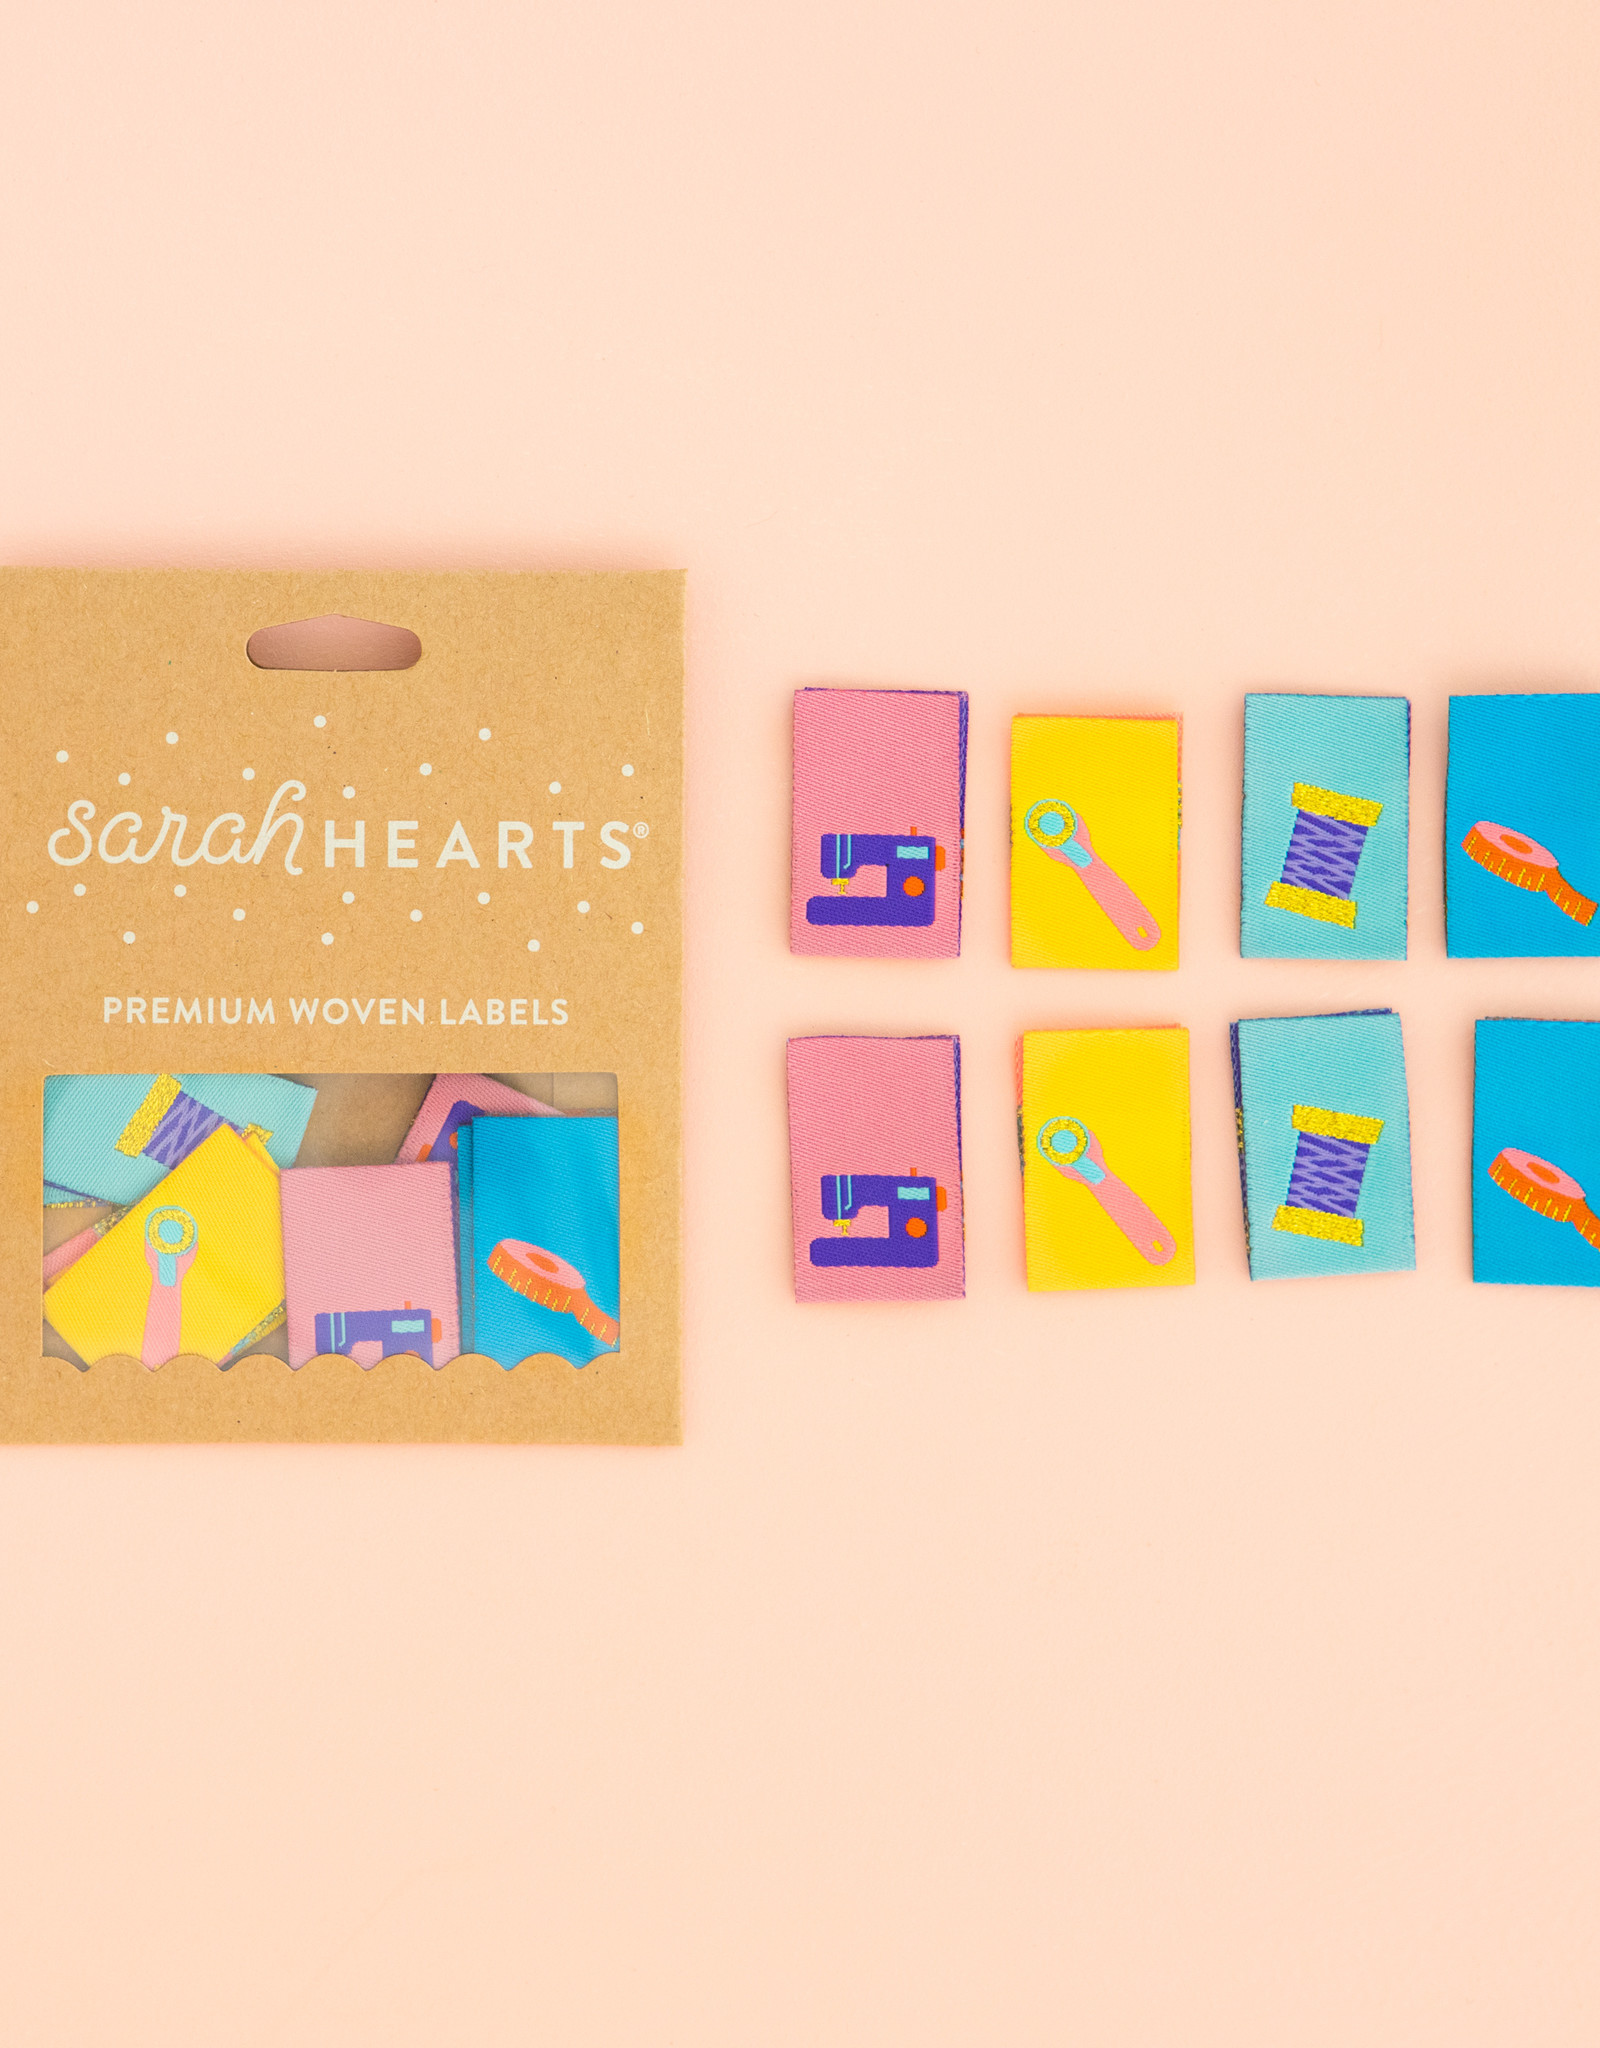 Sarah Hearts Innaailabels - Sewing Tools